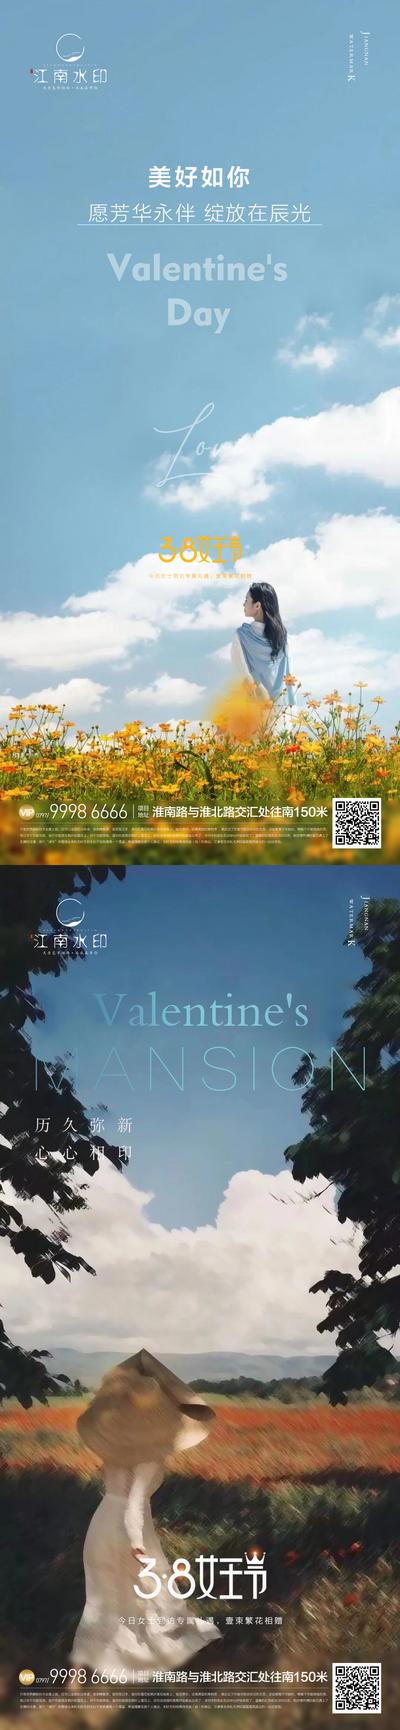 南门网 海报 地产 公历节日 女神节 妇女节 鲜花 唯美 系列